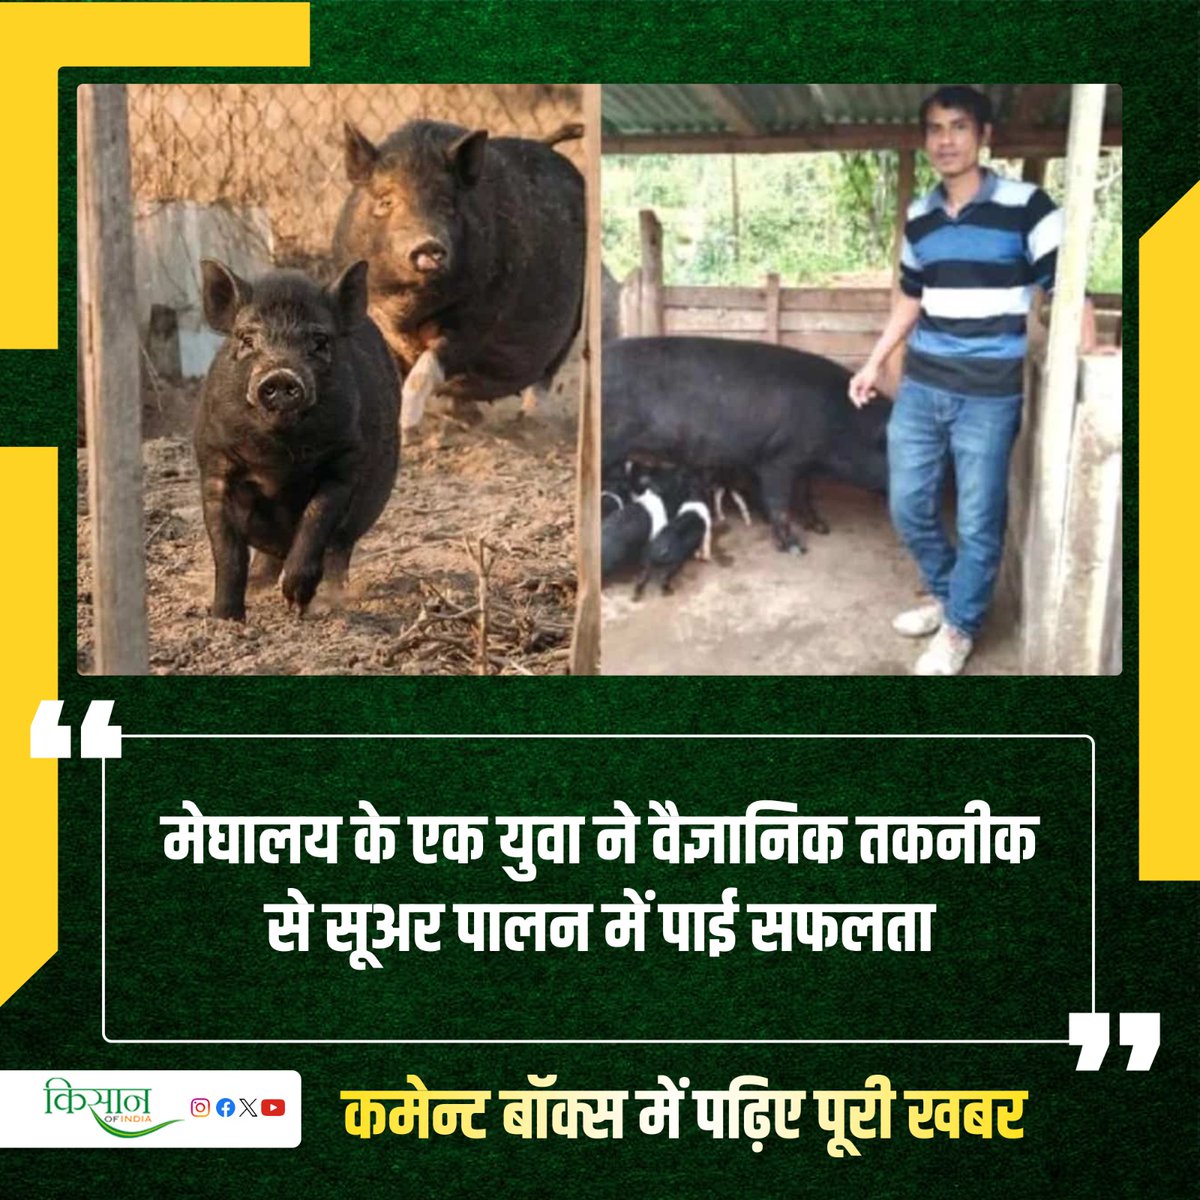 सूअर पालन से होने वाले मुनाफ़े को देखते हुए बहुत से किसान और युवा अब इस व्यवसाय का रुख कर रहे हैं। #KisanOfIndia #PigFarming #AnimalHusbandry #Kisan #Agriculture